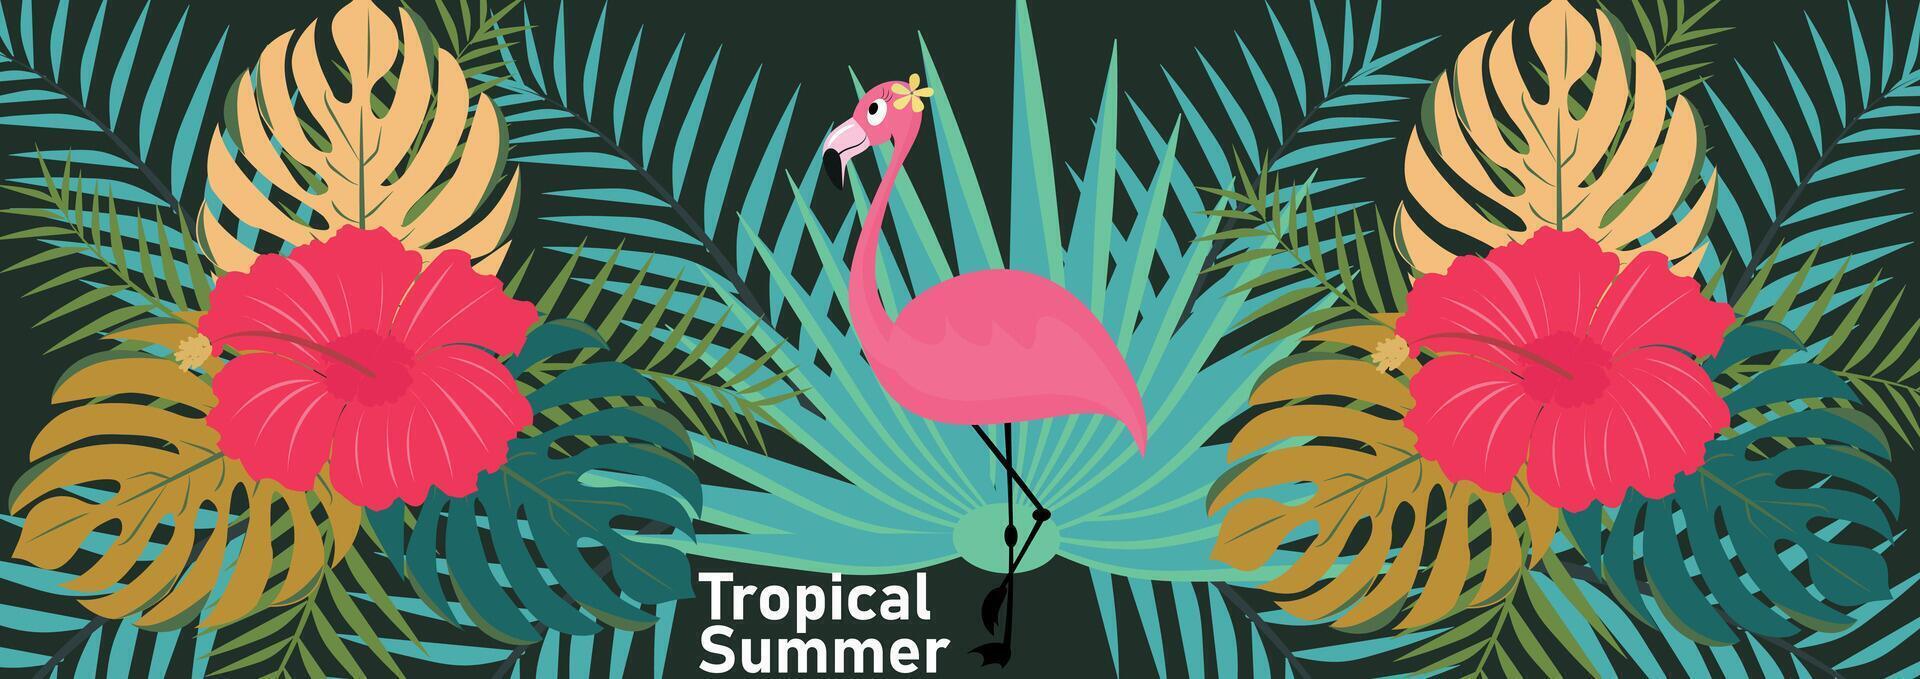 verano tropical naturaleza póster, web bandera, cubrir, tarjeta con tropical hojas, plantas y flamenco. vector moderno floral ilustraciones imprimir, palma hoja, monstruo, helecho, para fondo, etiqueta o bandera